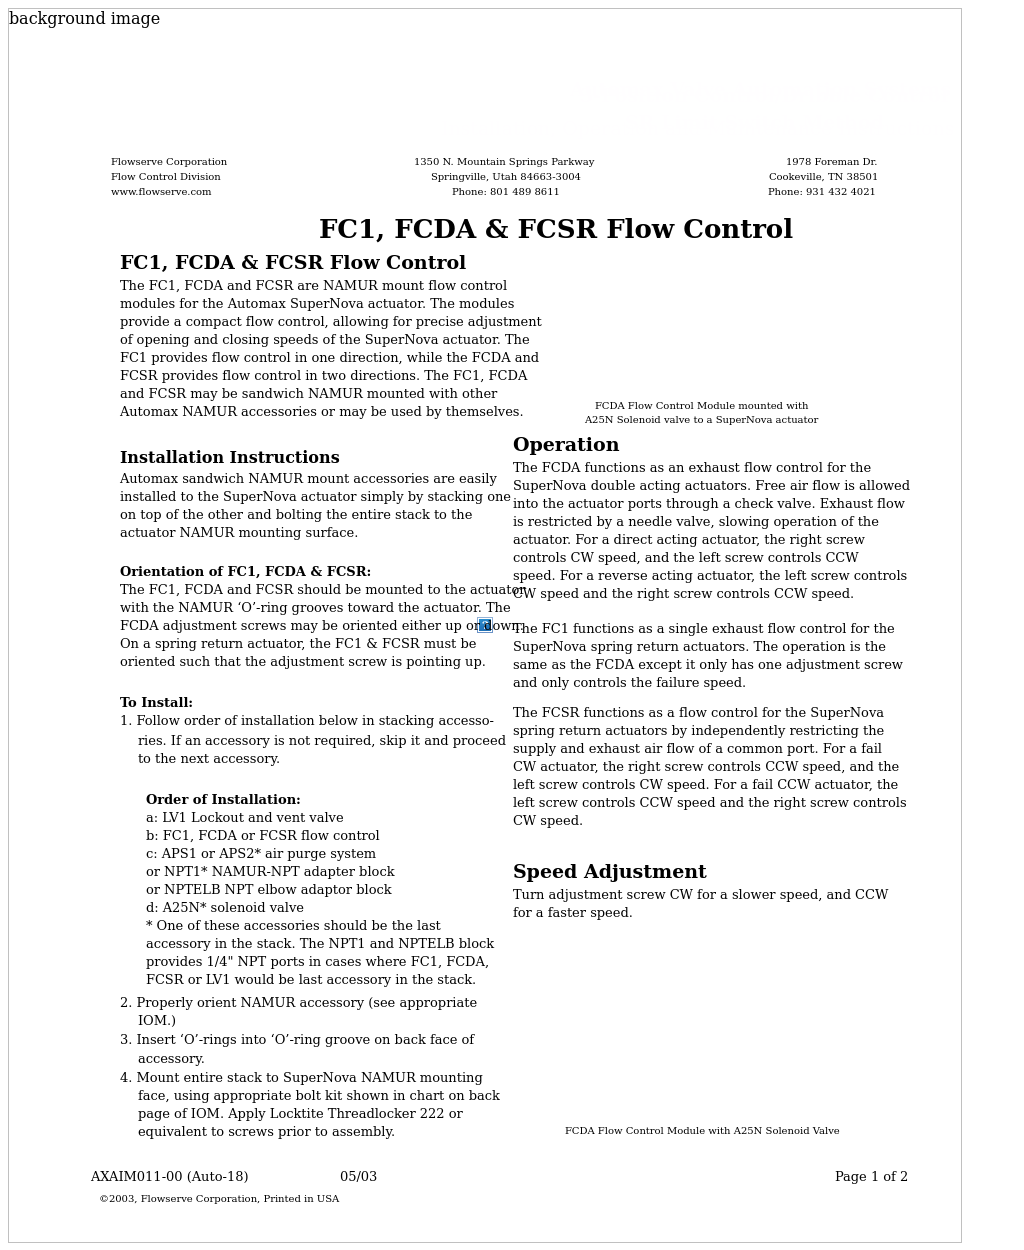 FCDA Flow Control